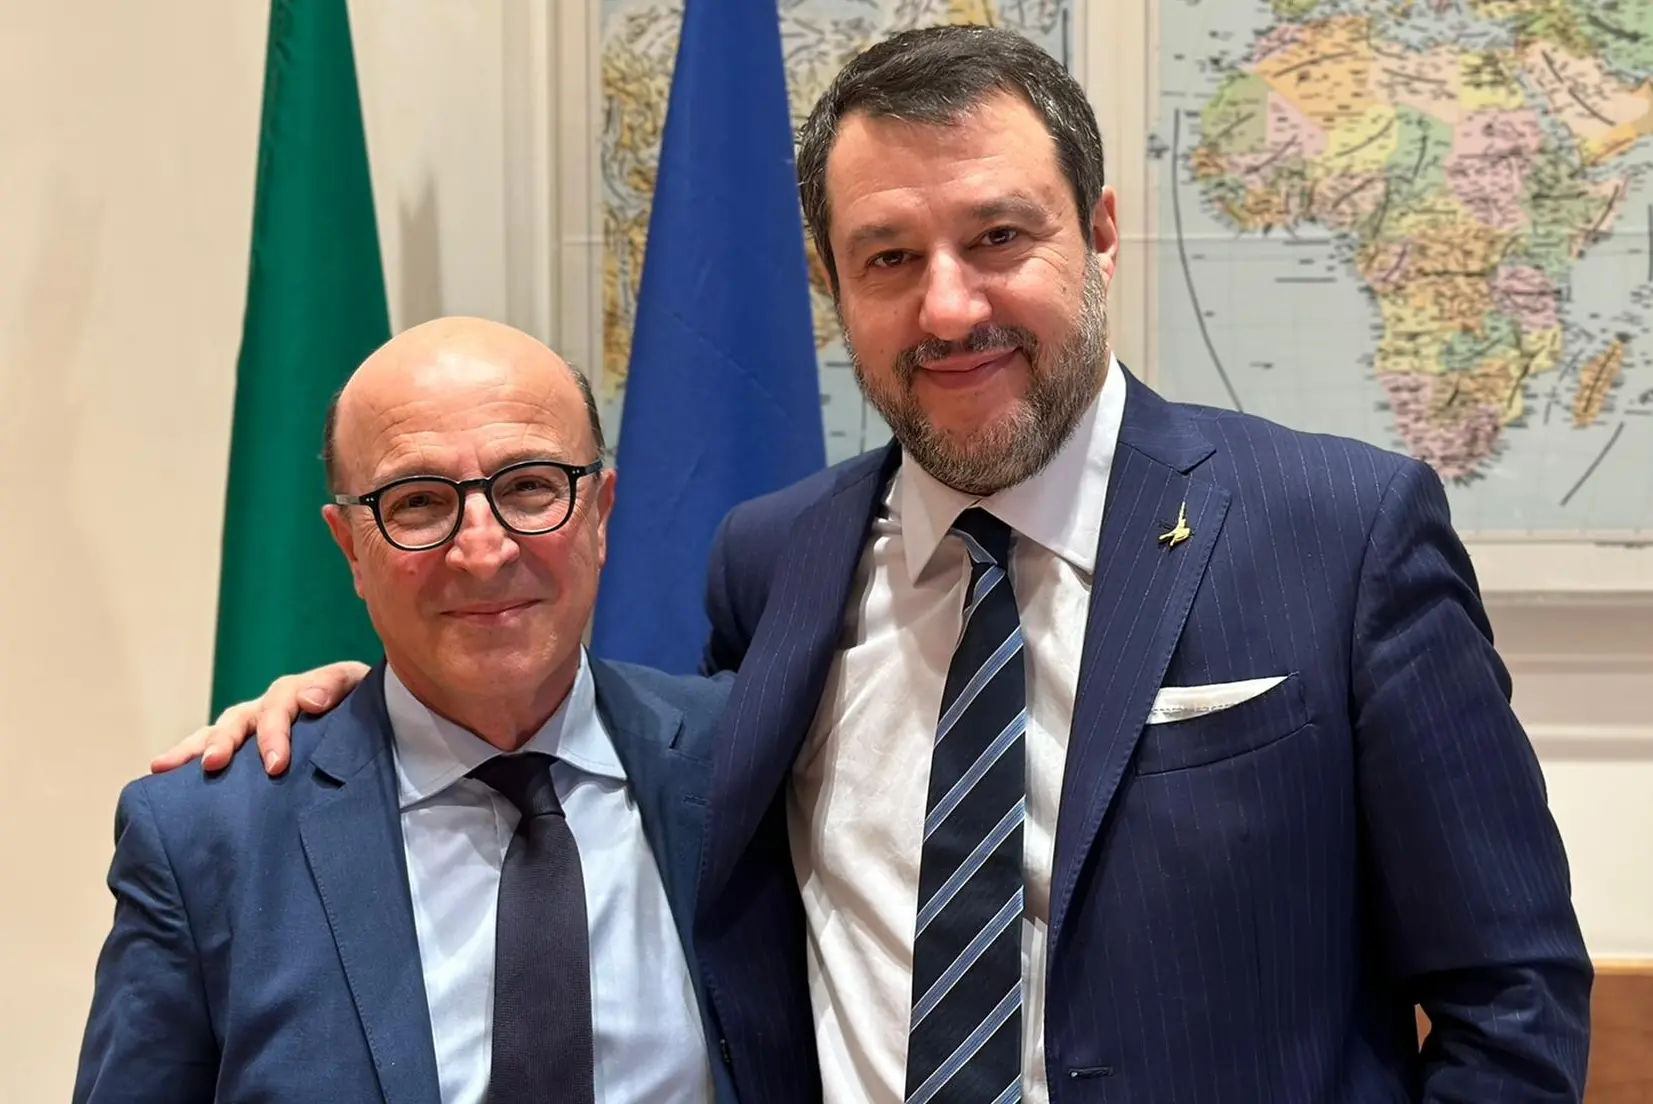 Mario Nieddu e Matteo Salvini (archivio L'Unione Sarda)